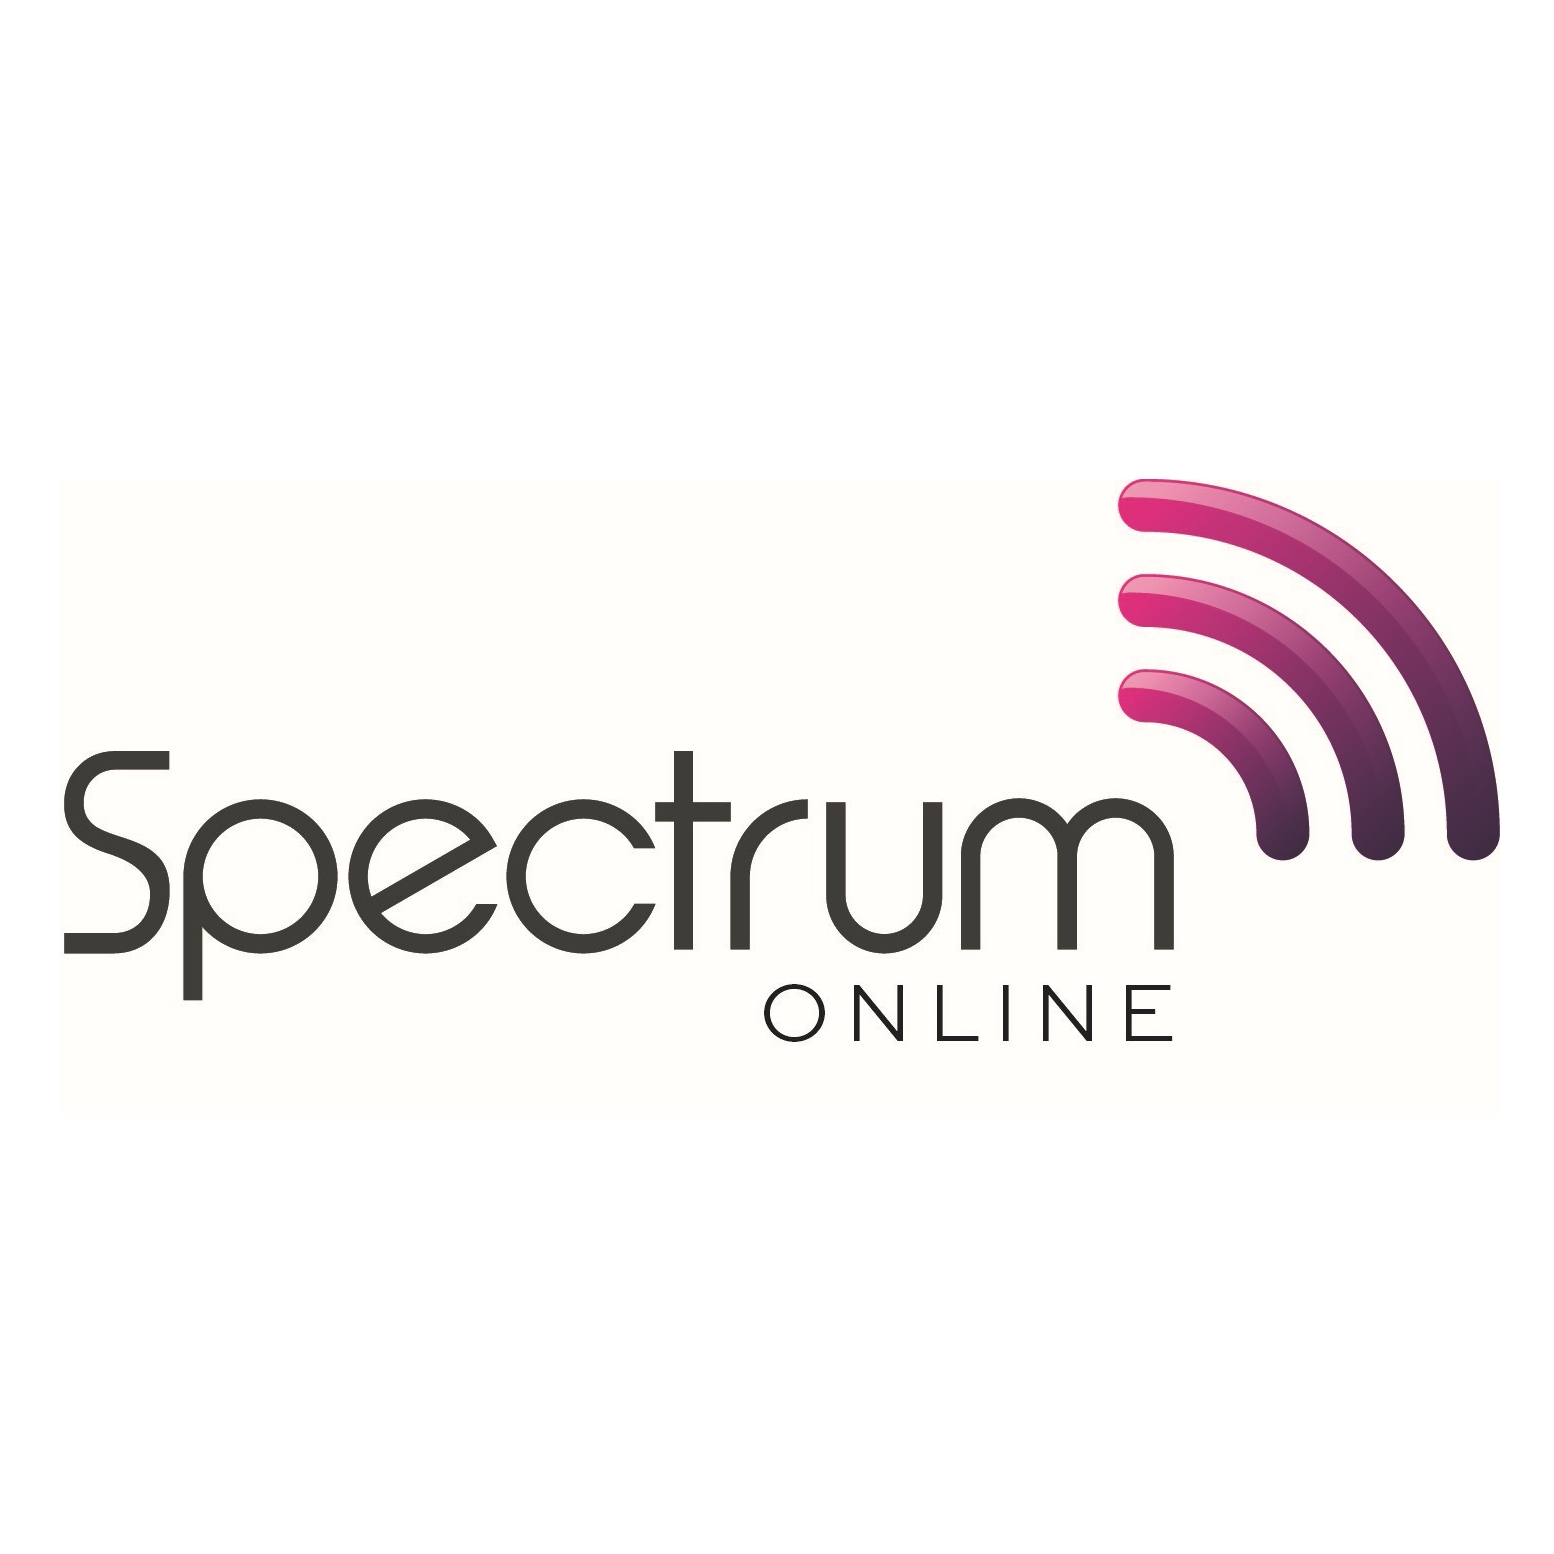 Radio spectrum